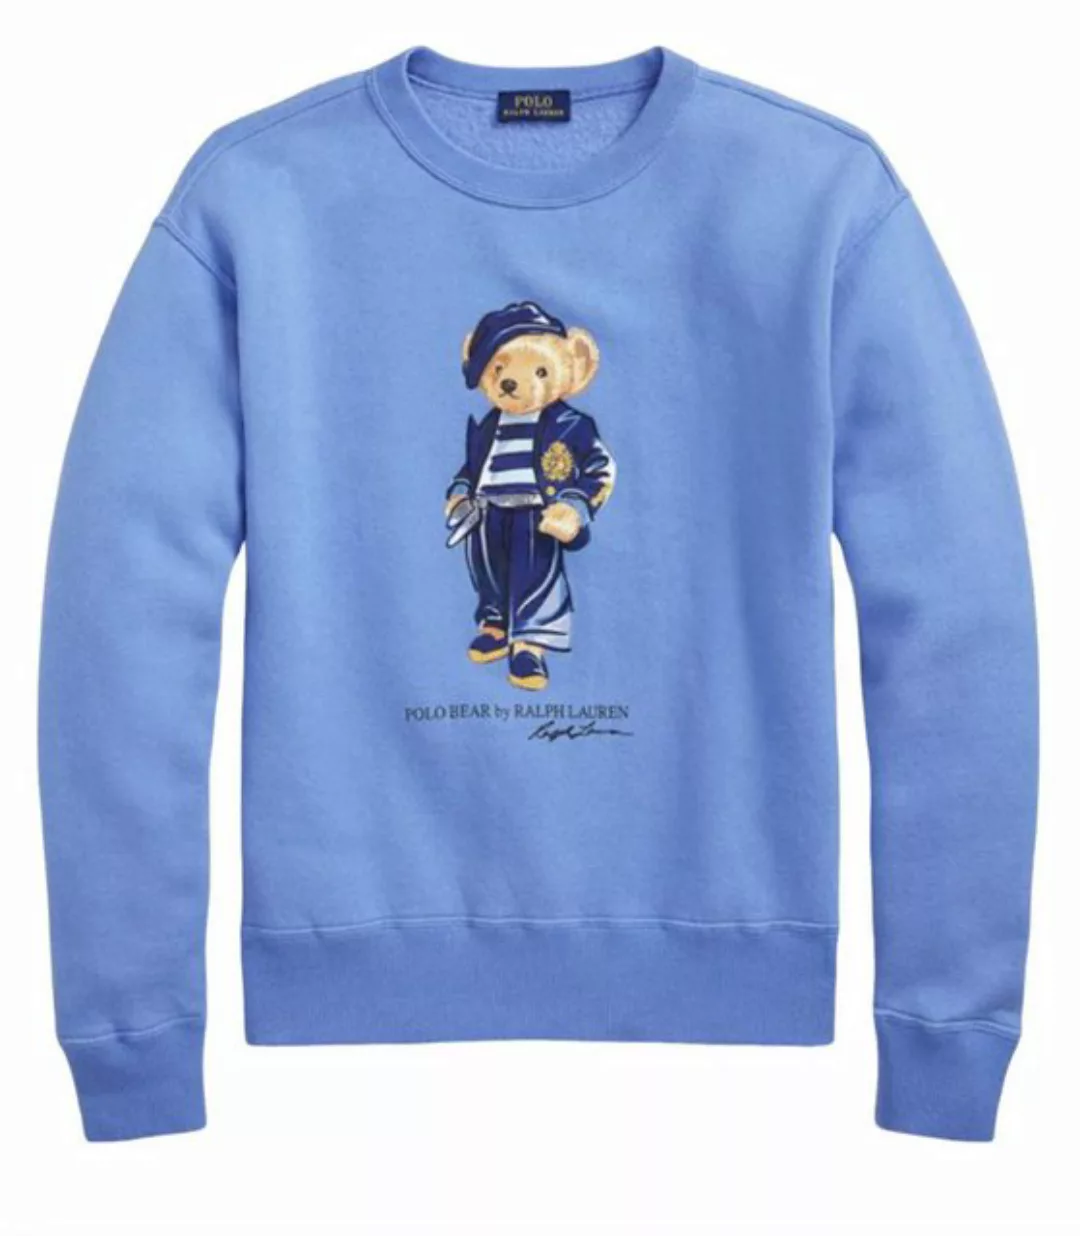 Polo Ralph Lauren Sweatshirt Bear In Paris Bär Sweatshirt Sweater Pullover günstig online kaufen